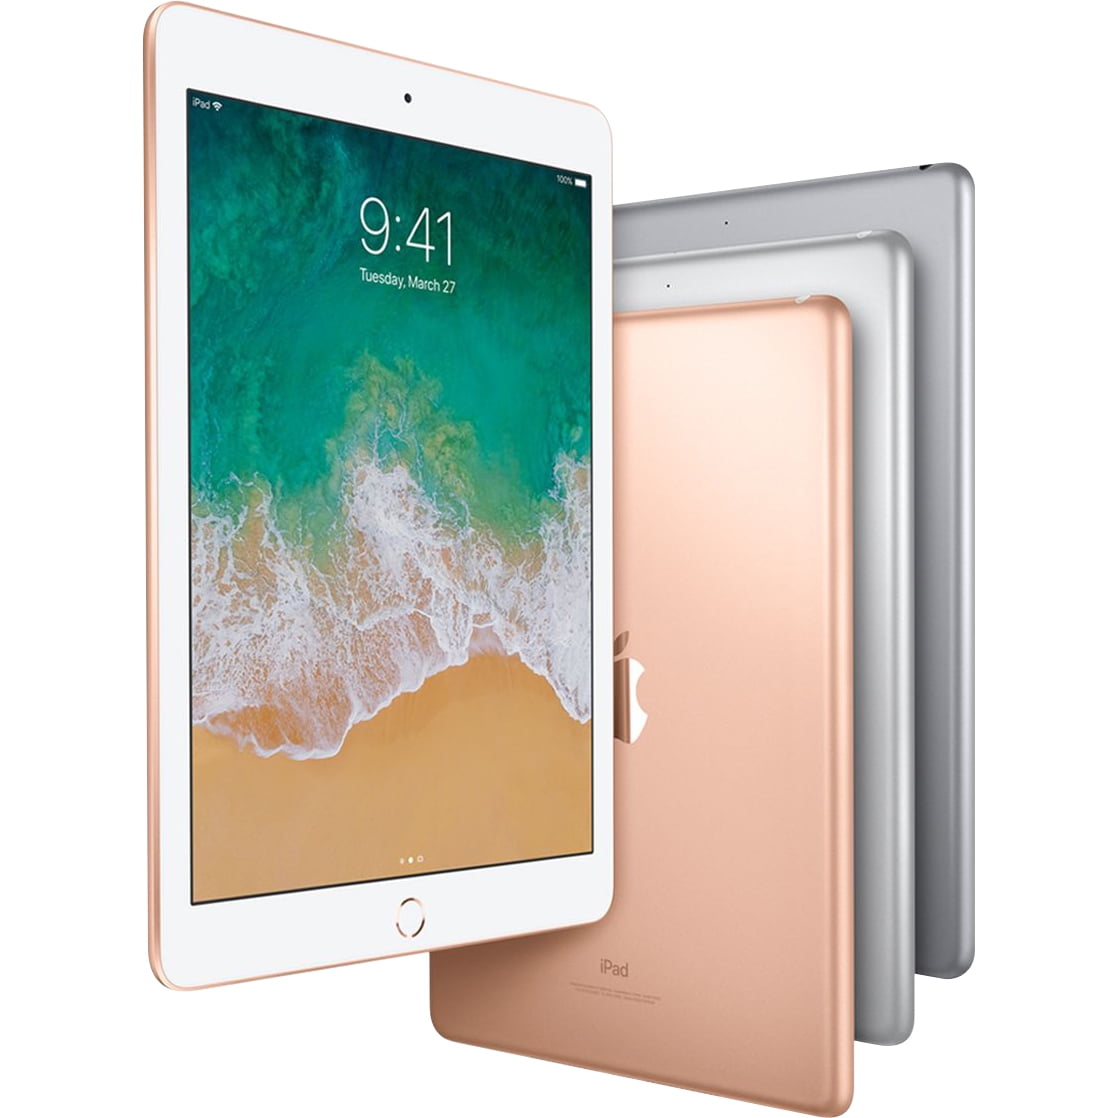 Apple 9.7-inch iPad Wi-Fi generation - tablet - 128 GB - 9.7" (2048 x 1536) - space gray - Walmart.com